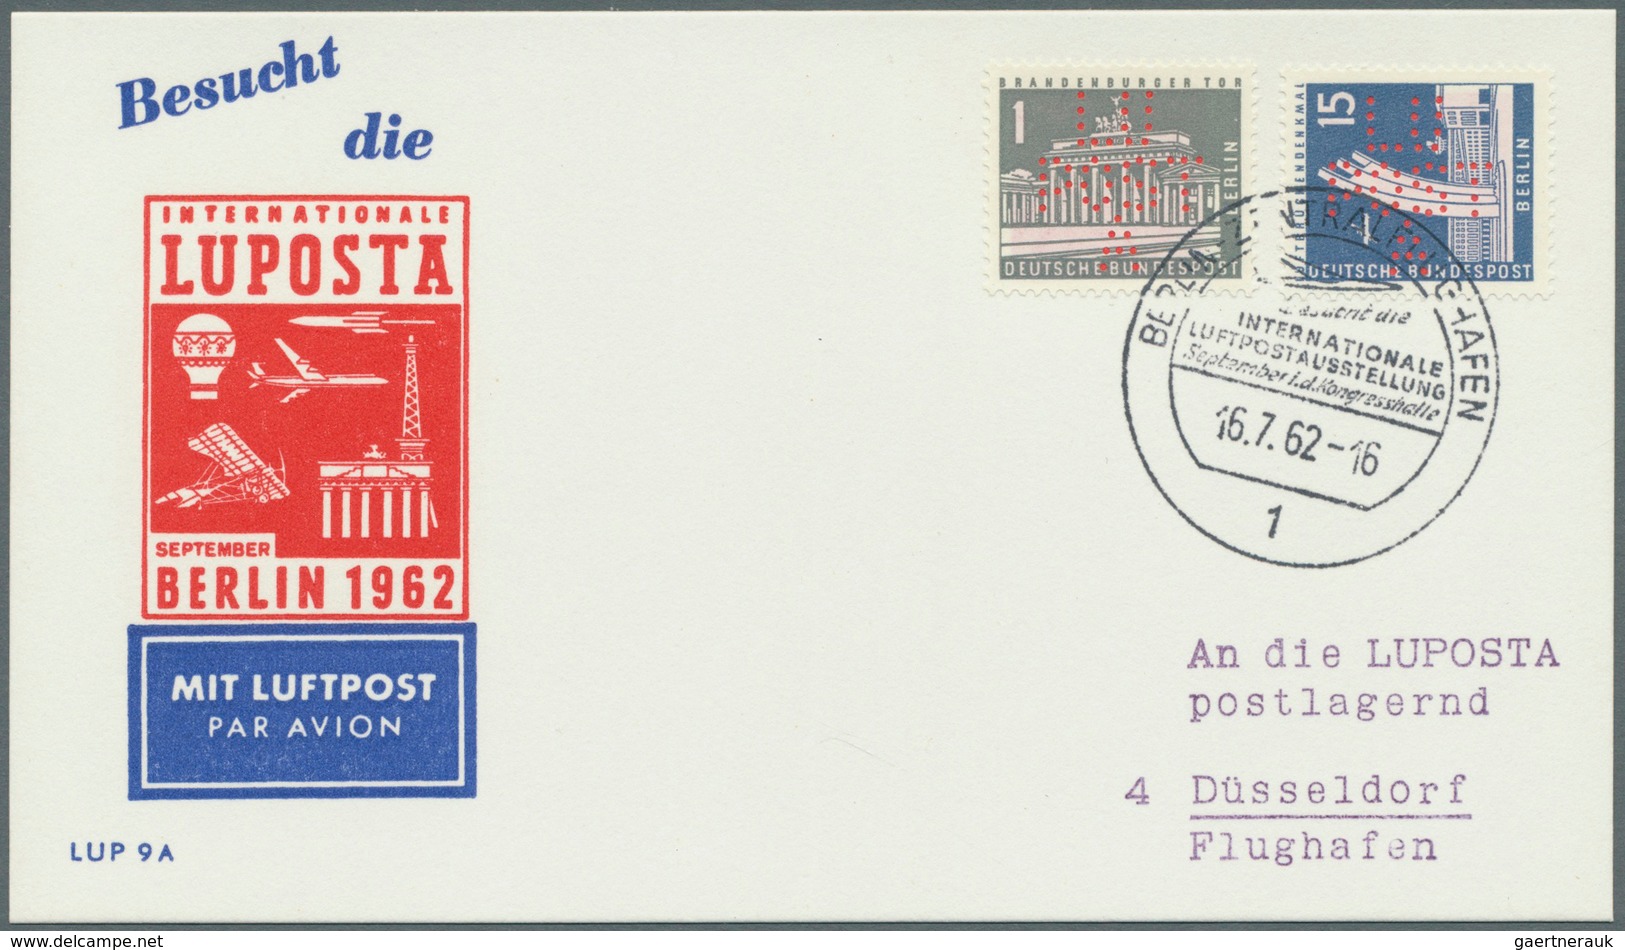 Berlin - Besonderheiten: 1962, LUPOSTA - Marke zur Internationale Luftpost-Ausstellung Berlin, sehr